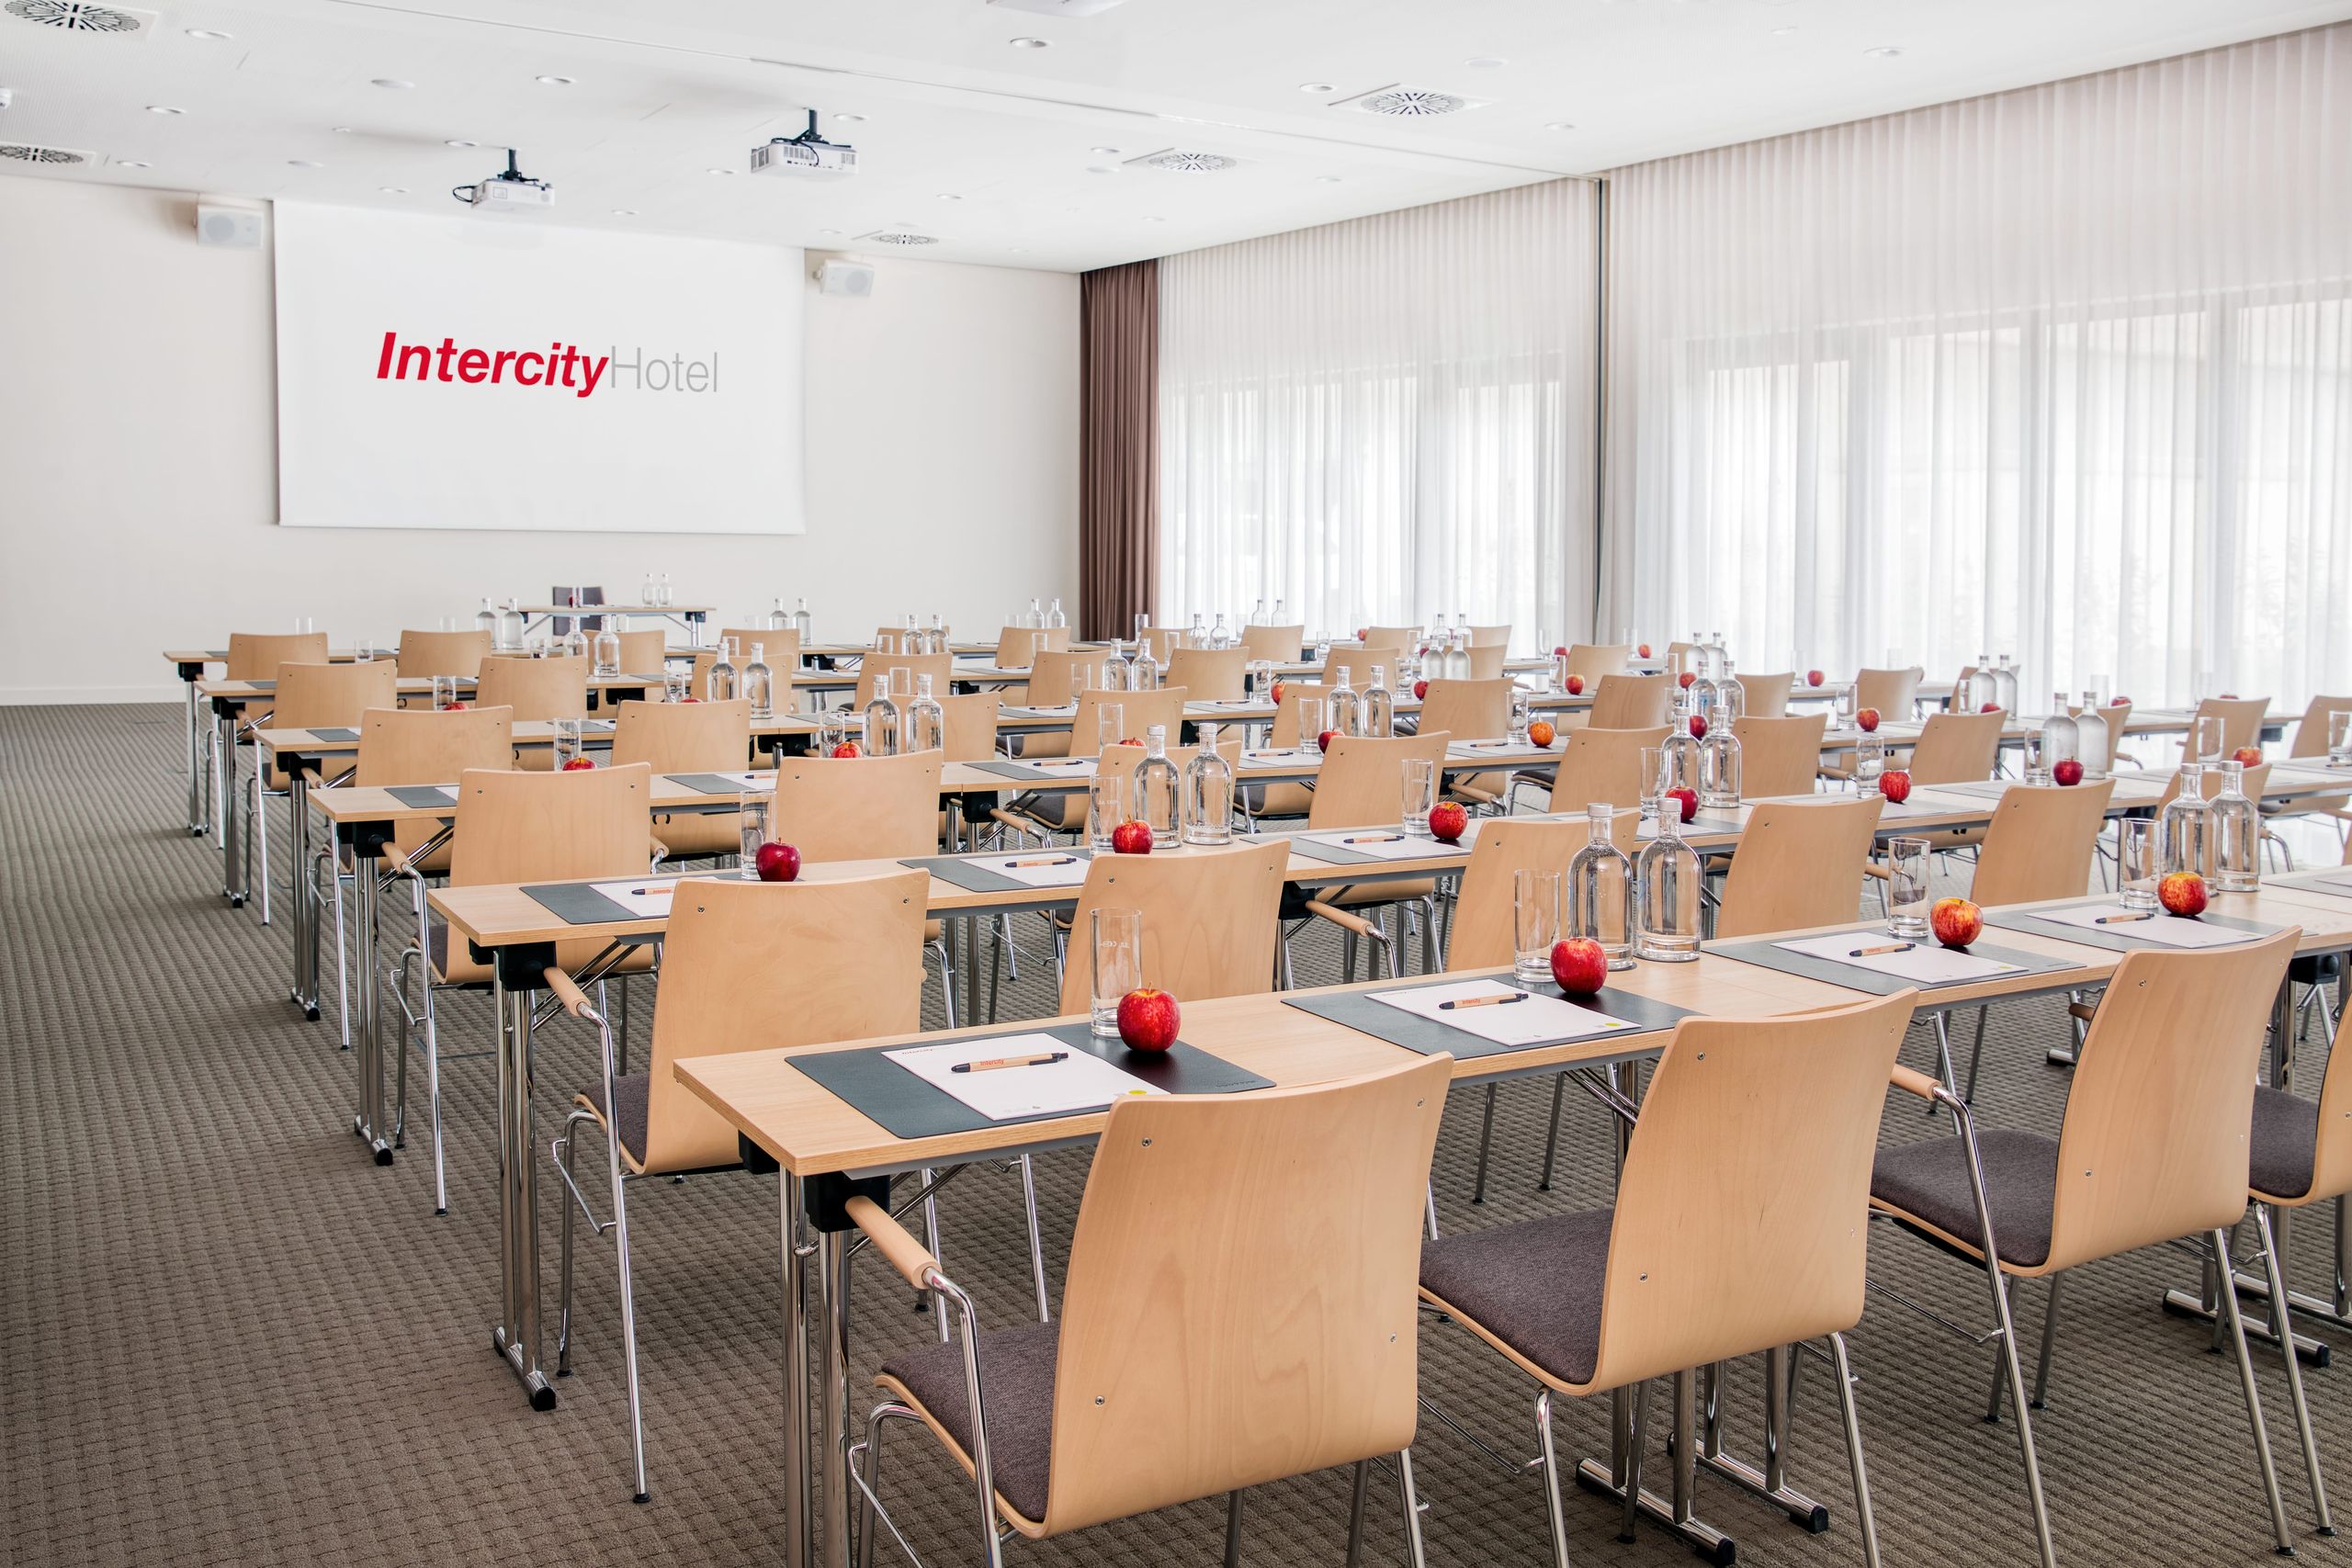 IntercityHotel Saarbrücken - Meetings & Events